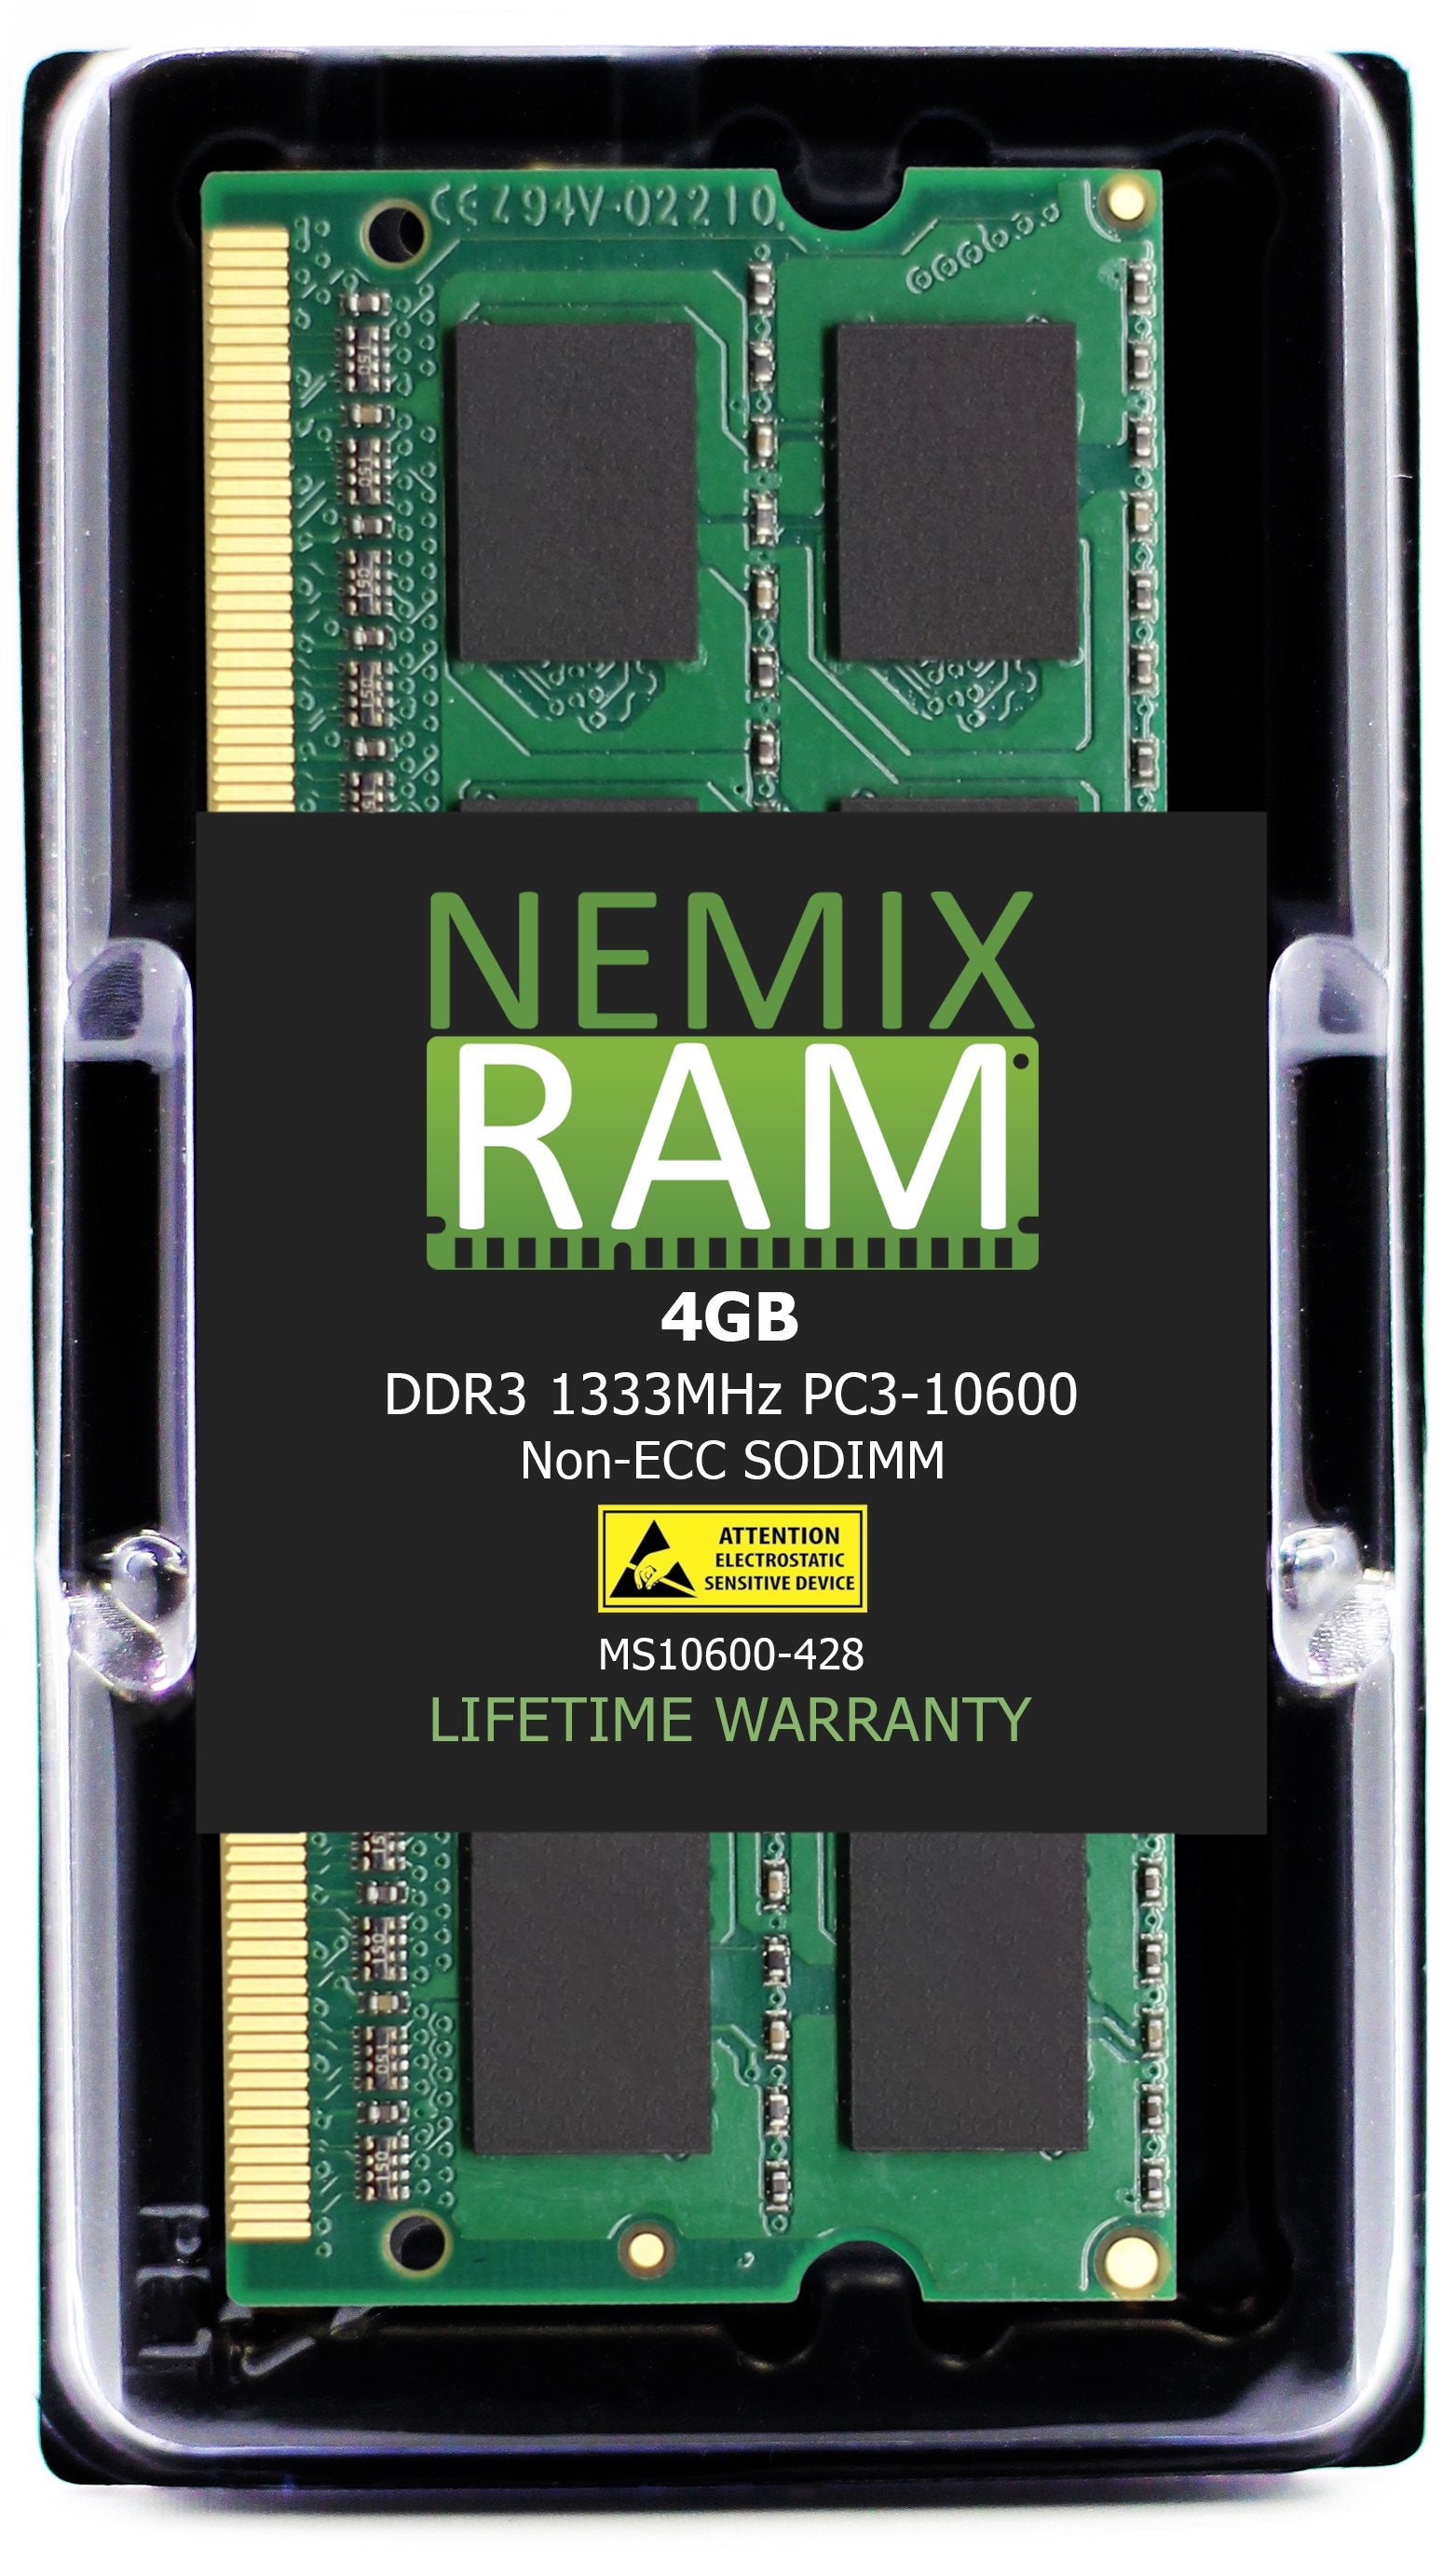 DDR3 1333MHZ PC3-10600 SODIMM Apple Mac Mini 2011 (5,1 5,2 5,3)